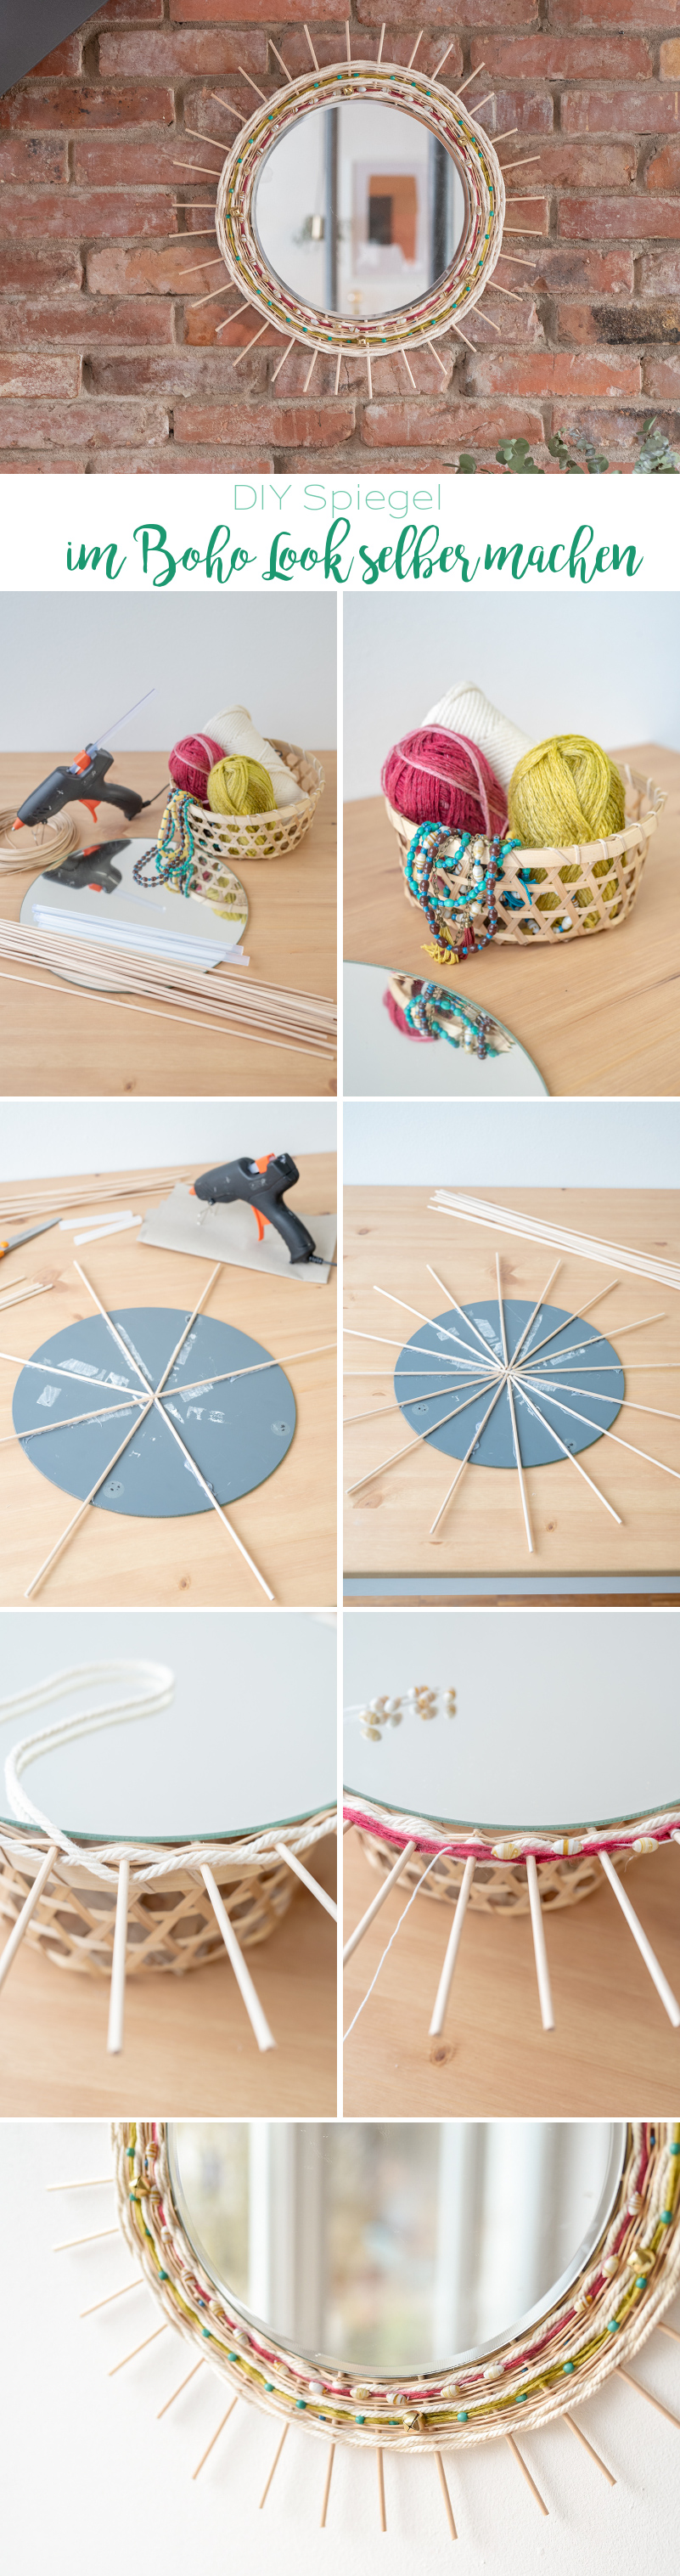 DIY Anleitung für einen runden, selbstgemachten Spiegel im Boho Look mit Holzstäben und gewebter Wolle als Deko für das Wohnzimmer